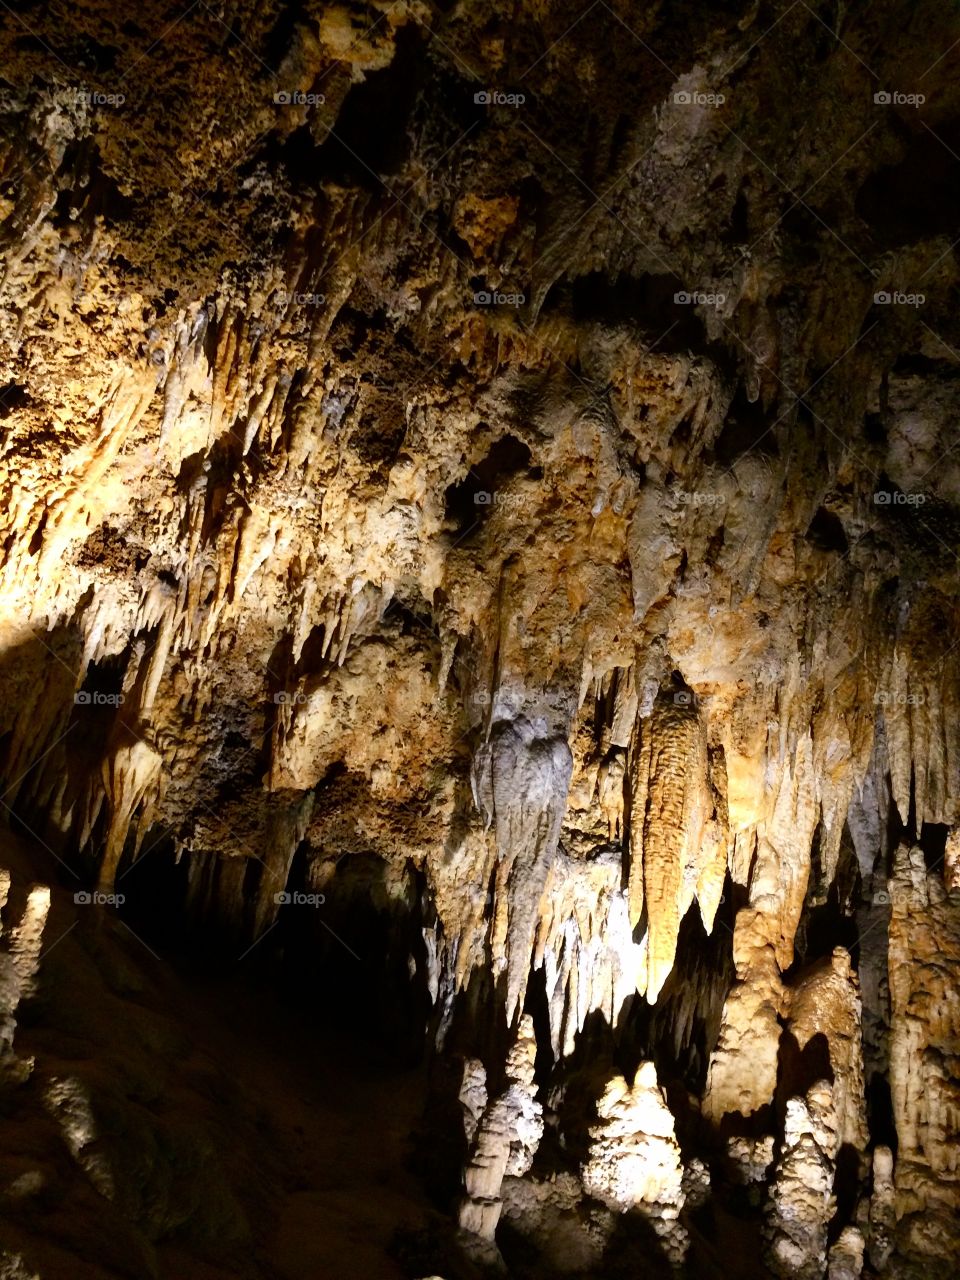 Stalactites Larae Caverns cave